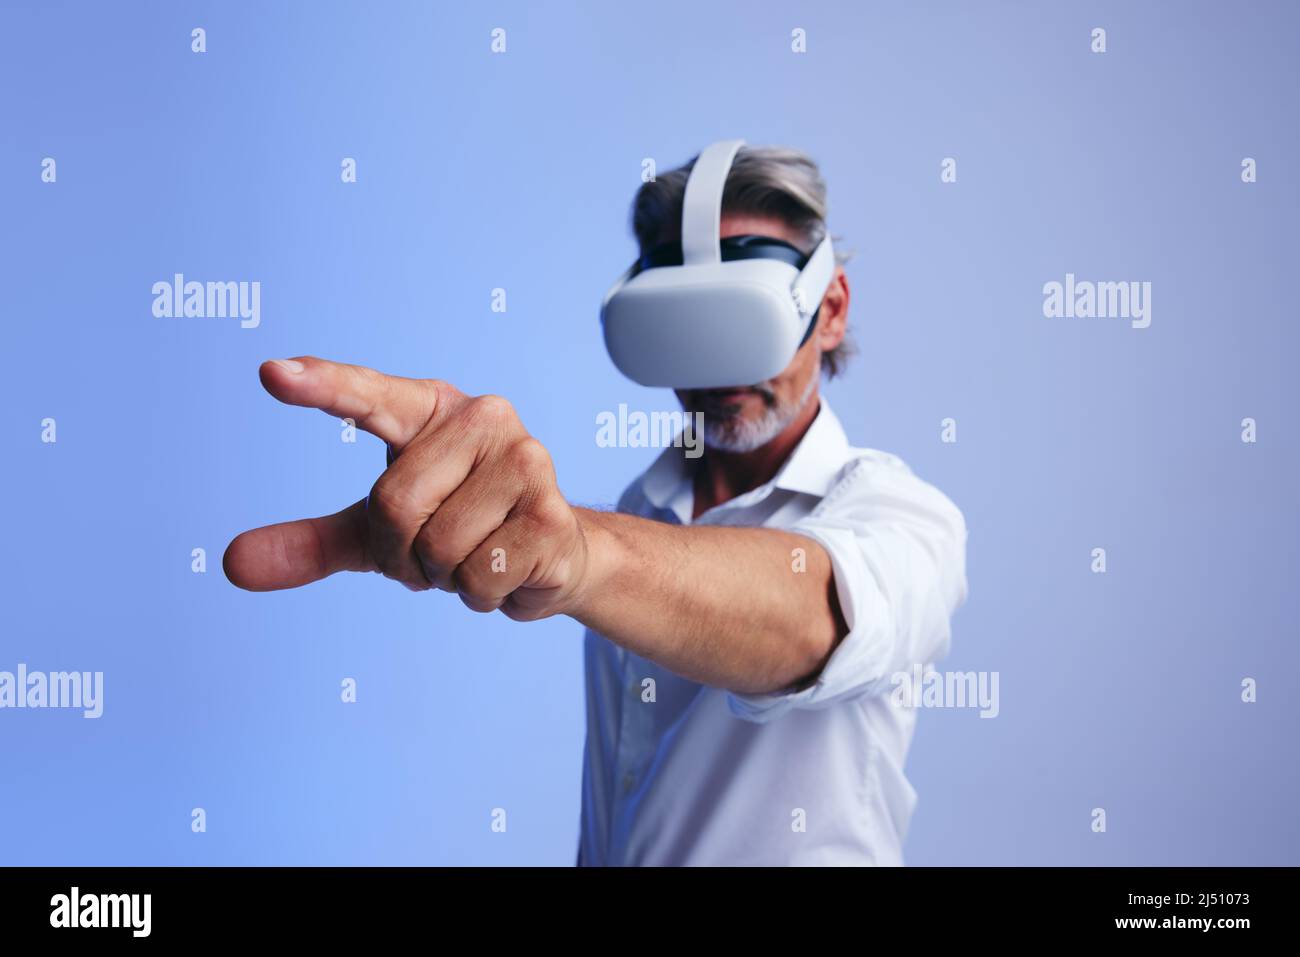 Homme d'affaires mature qui interagit avec le métaverse tout en portant des lunettes de réalité virtuelle. Homme d'affaires senior utilisant son doigt pour appuyer sur un bouton virtuel Banque D'Images